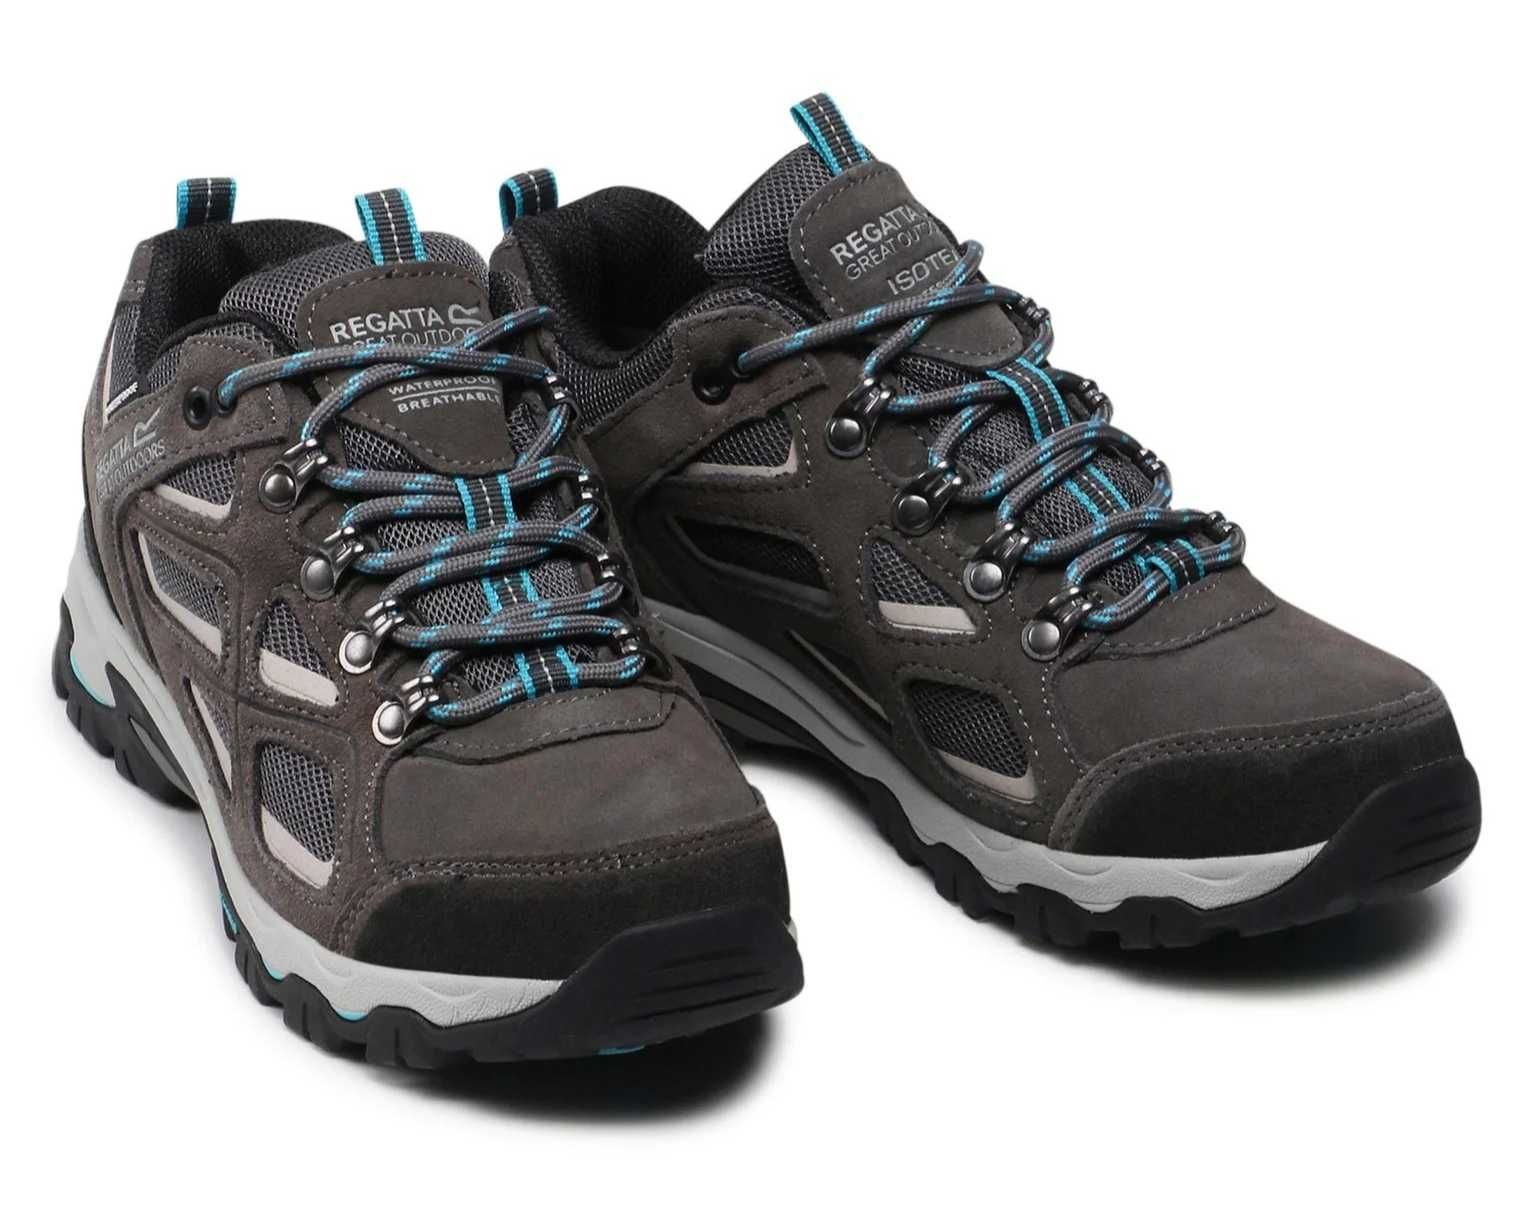 Regatta damskie buty trekkingowe niskie Lady Tebay r. 39 | RWF703 E7H